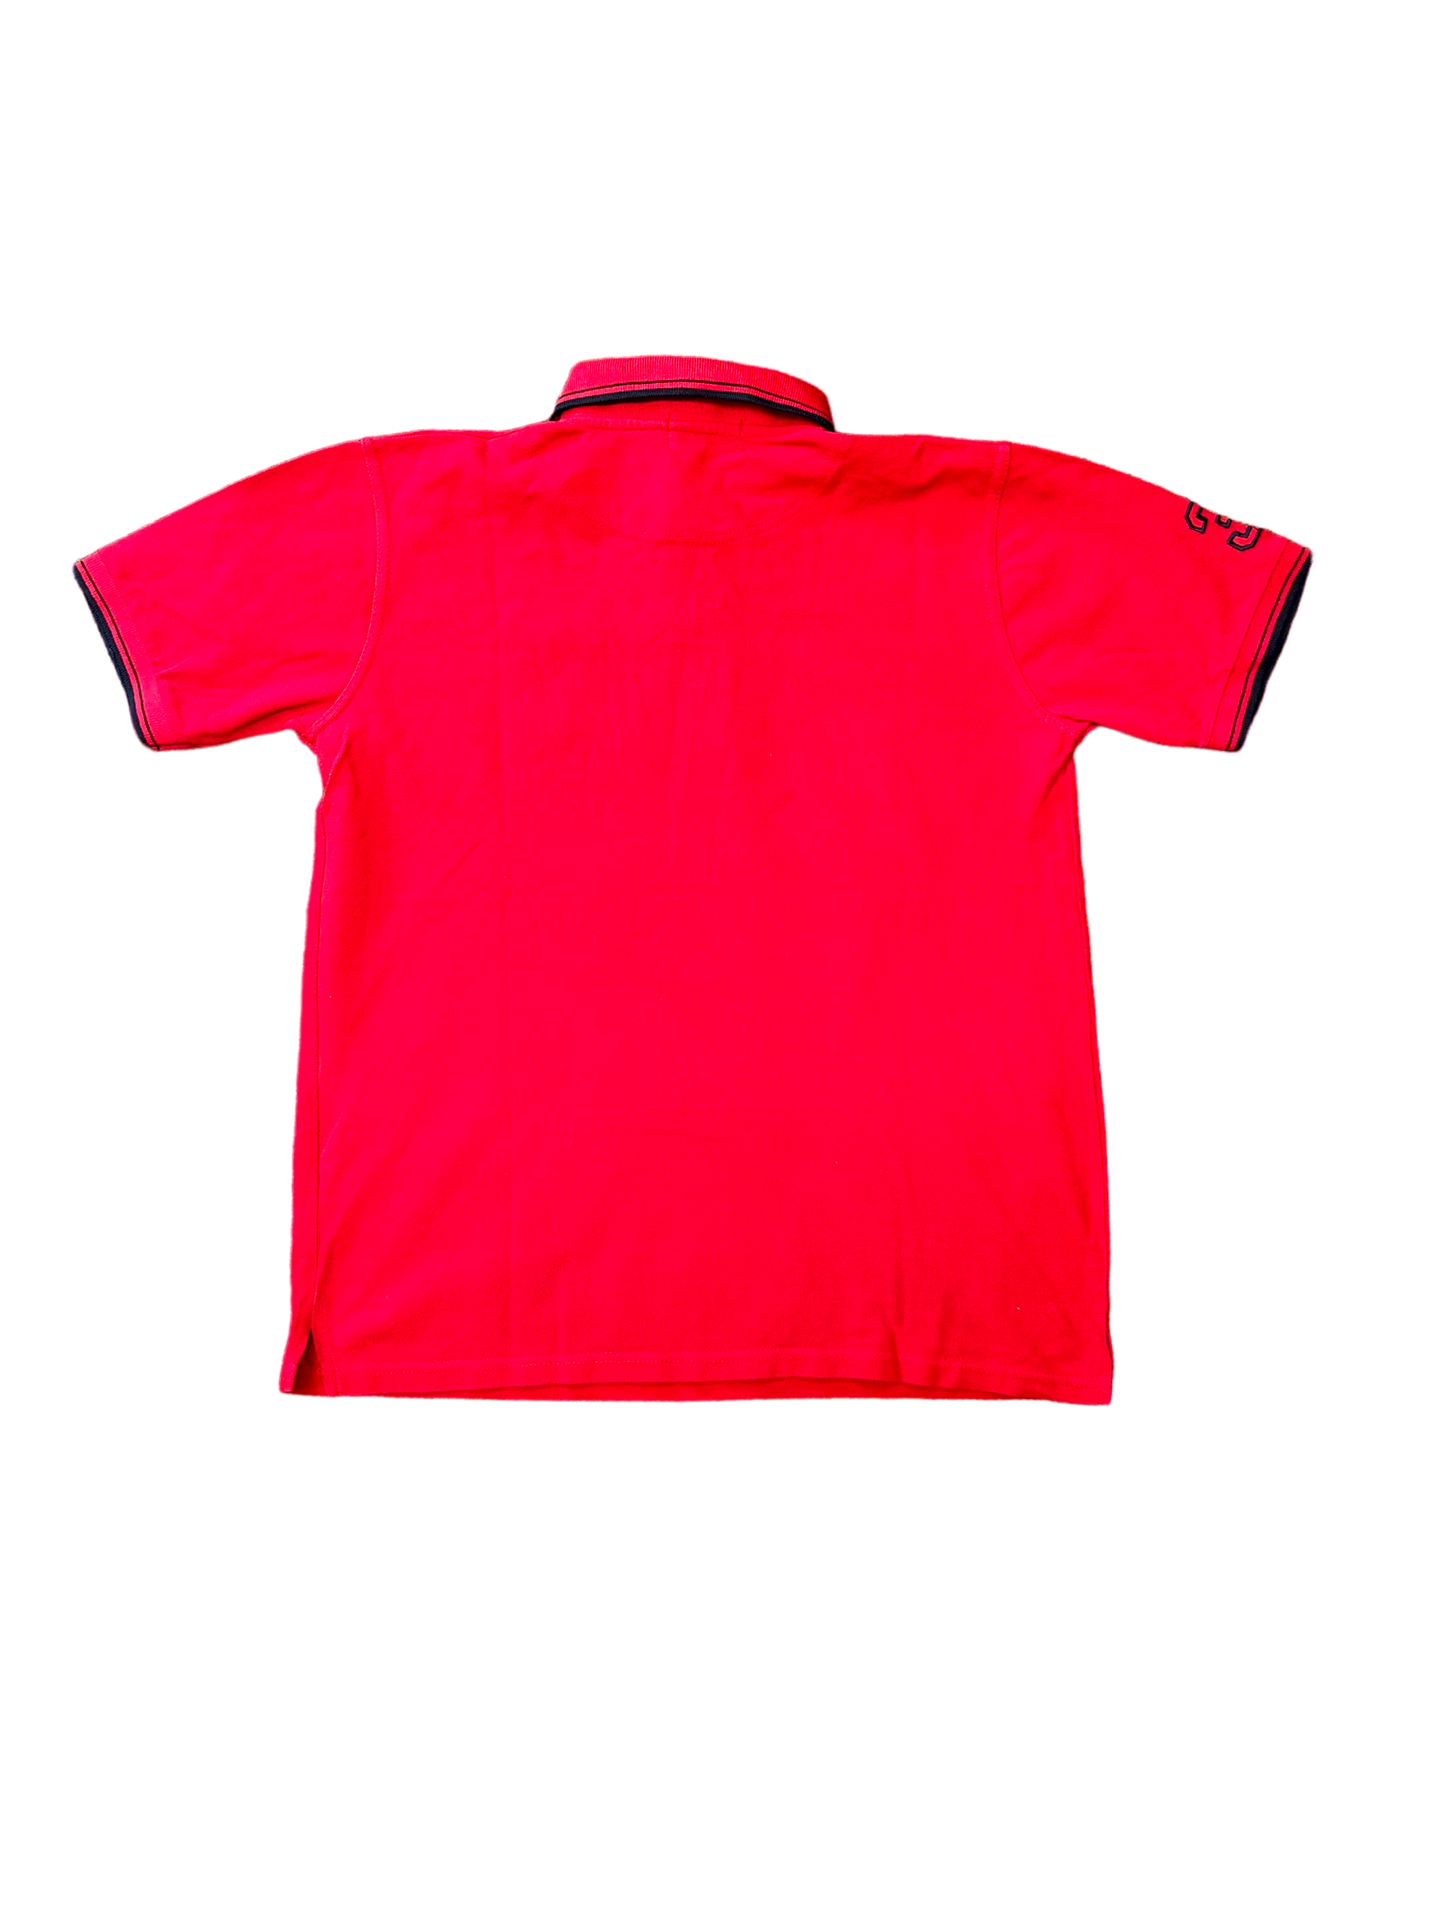 Red Ralph Lauren Polo Shirt